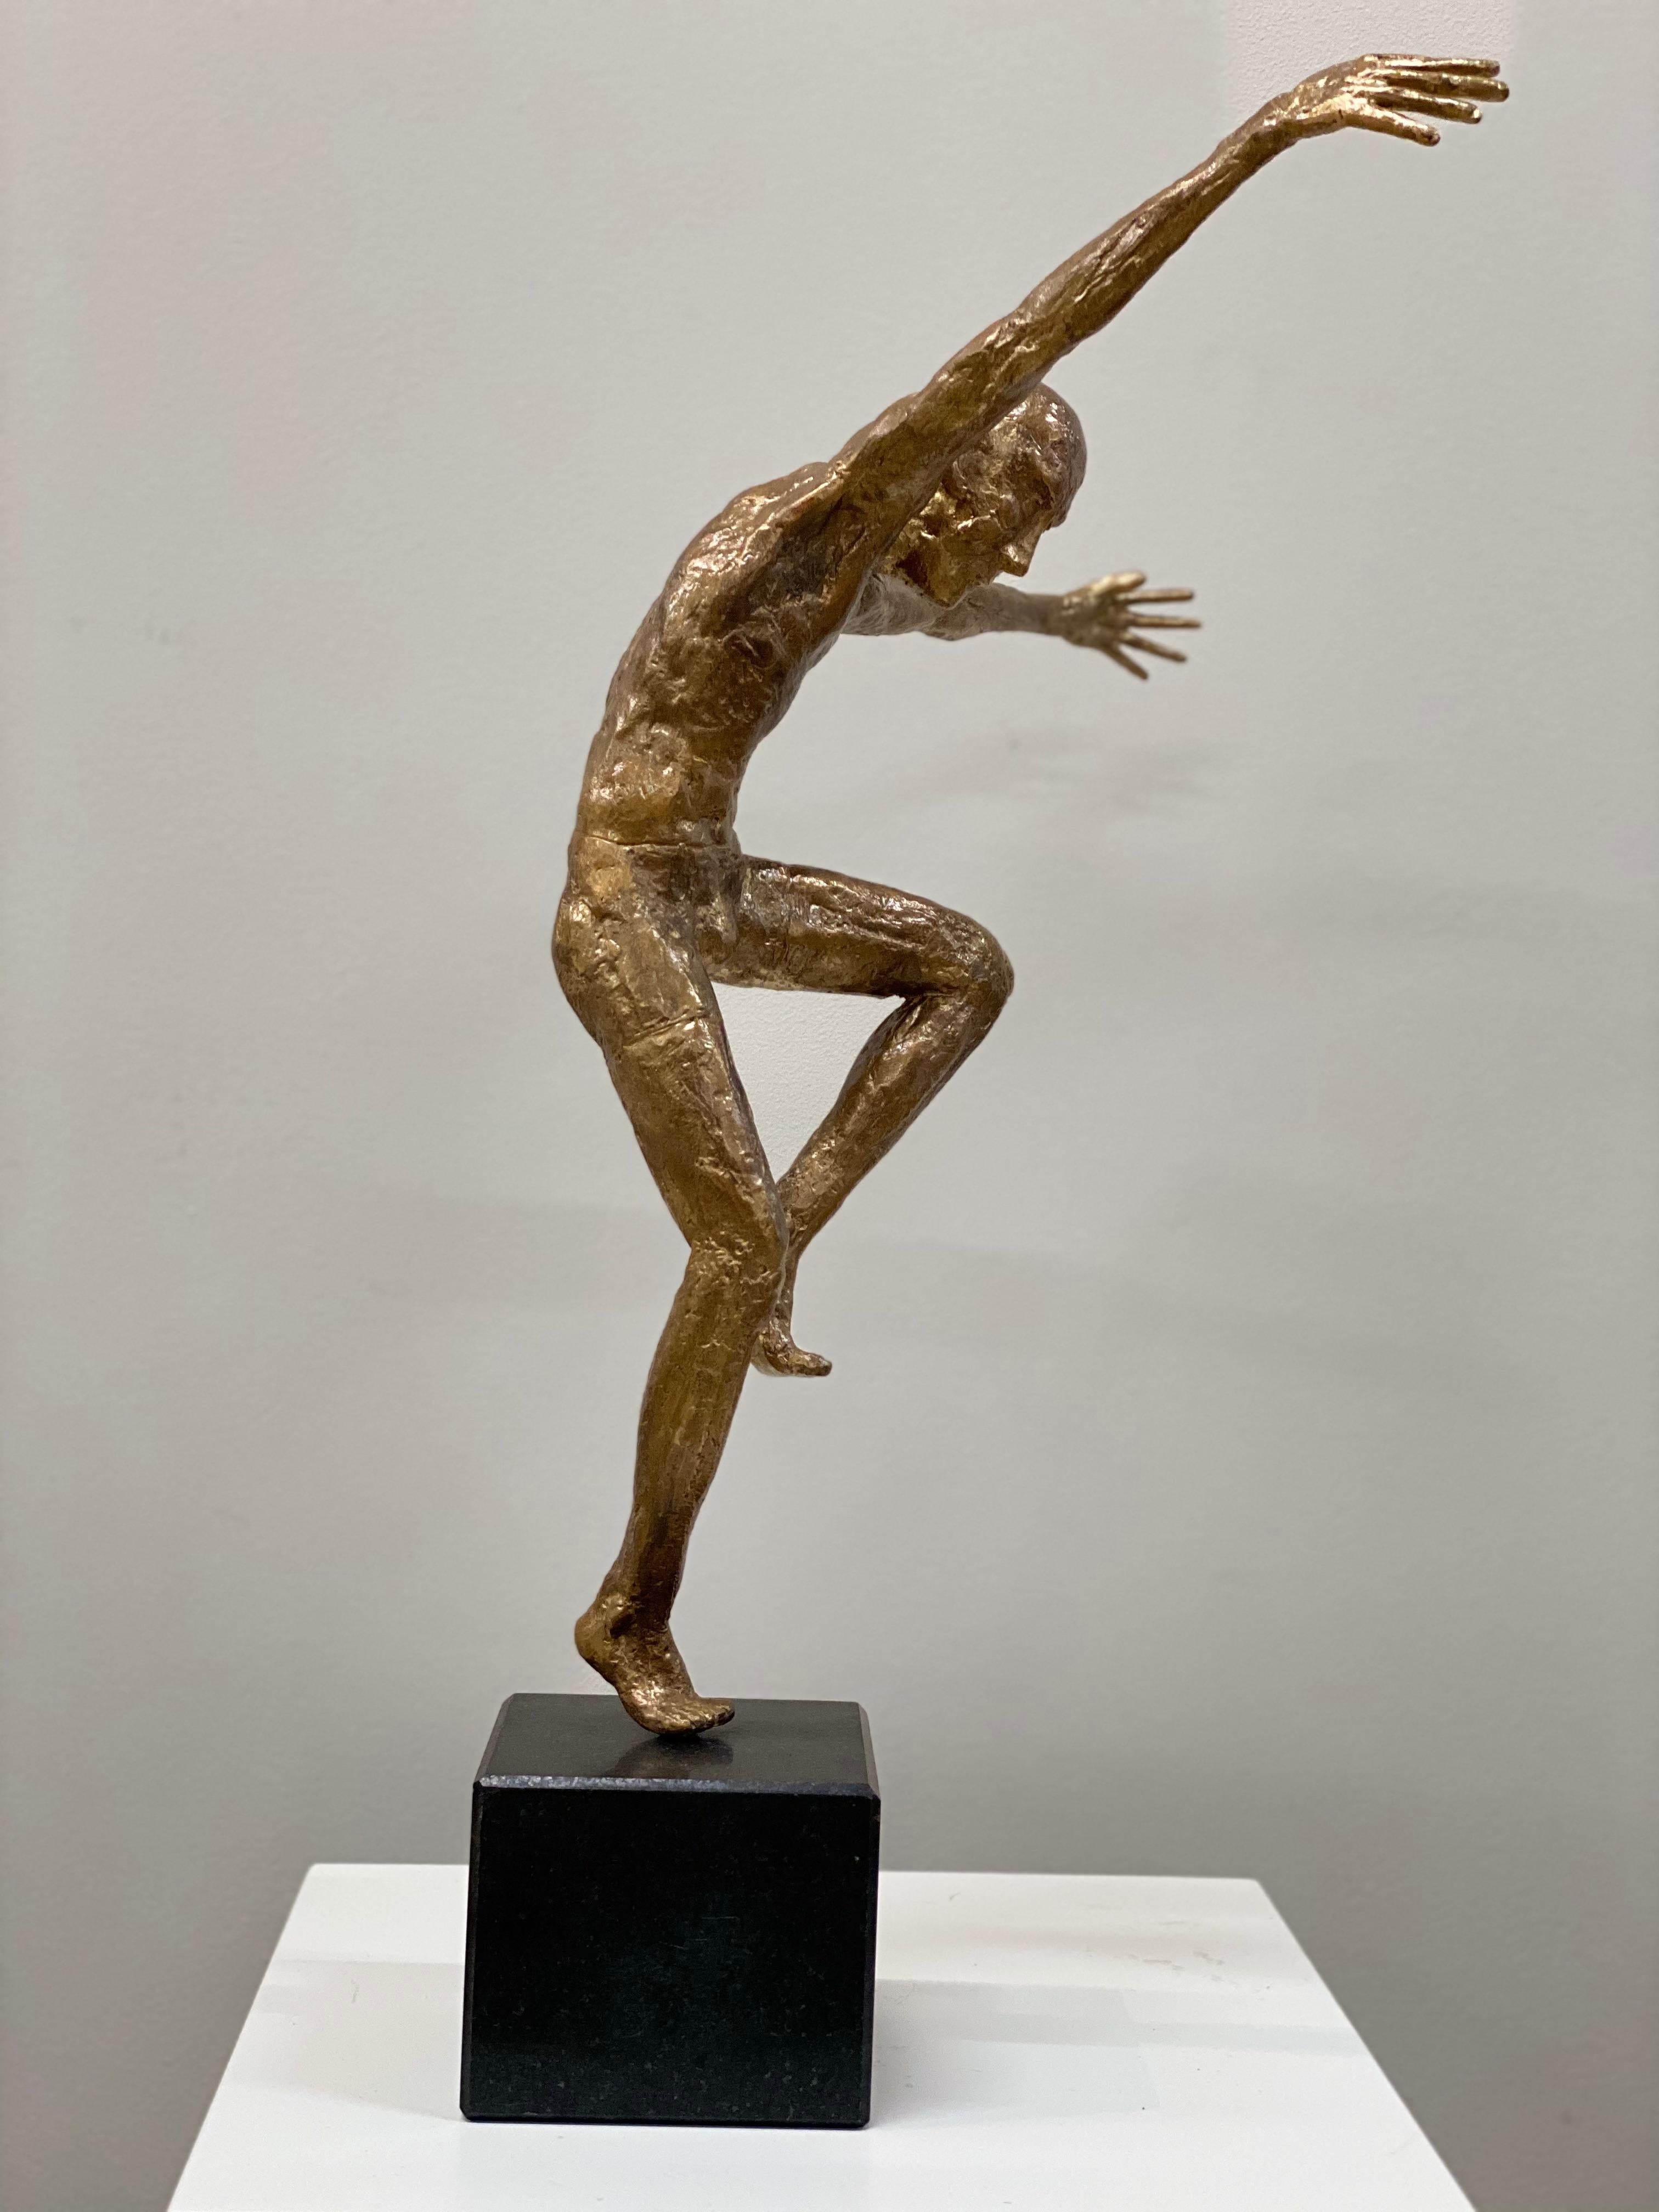 Diese Skulptur wurde vom niederländischen Künstler Martijn Soontiens aus Bronze gefertigt.   Die Skulptur steht auf einem Sockel aus Naturstein. 

Bei seinen männlichen Tanzskulpturen geht es um Bewegung und Bewegung. 

Der Künstler Martijn